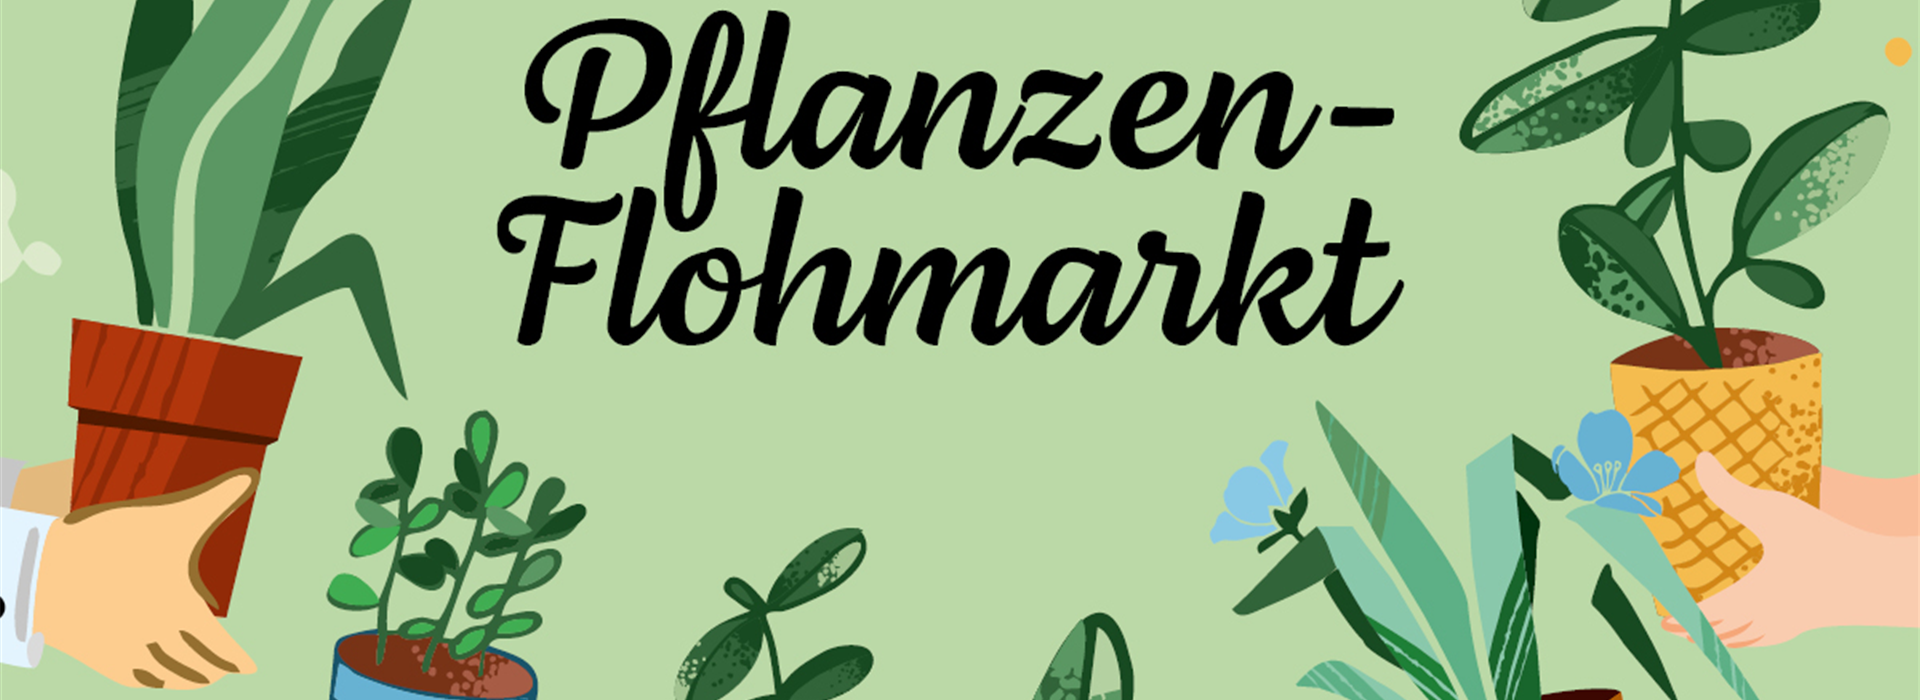 Pflanzenflohmarkt_Website_Events